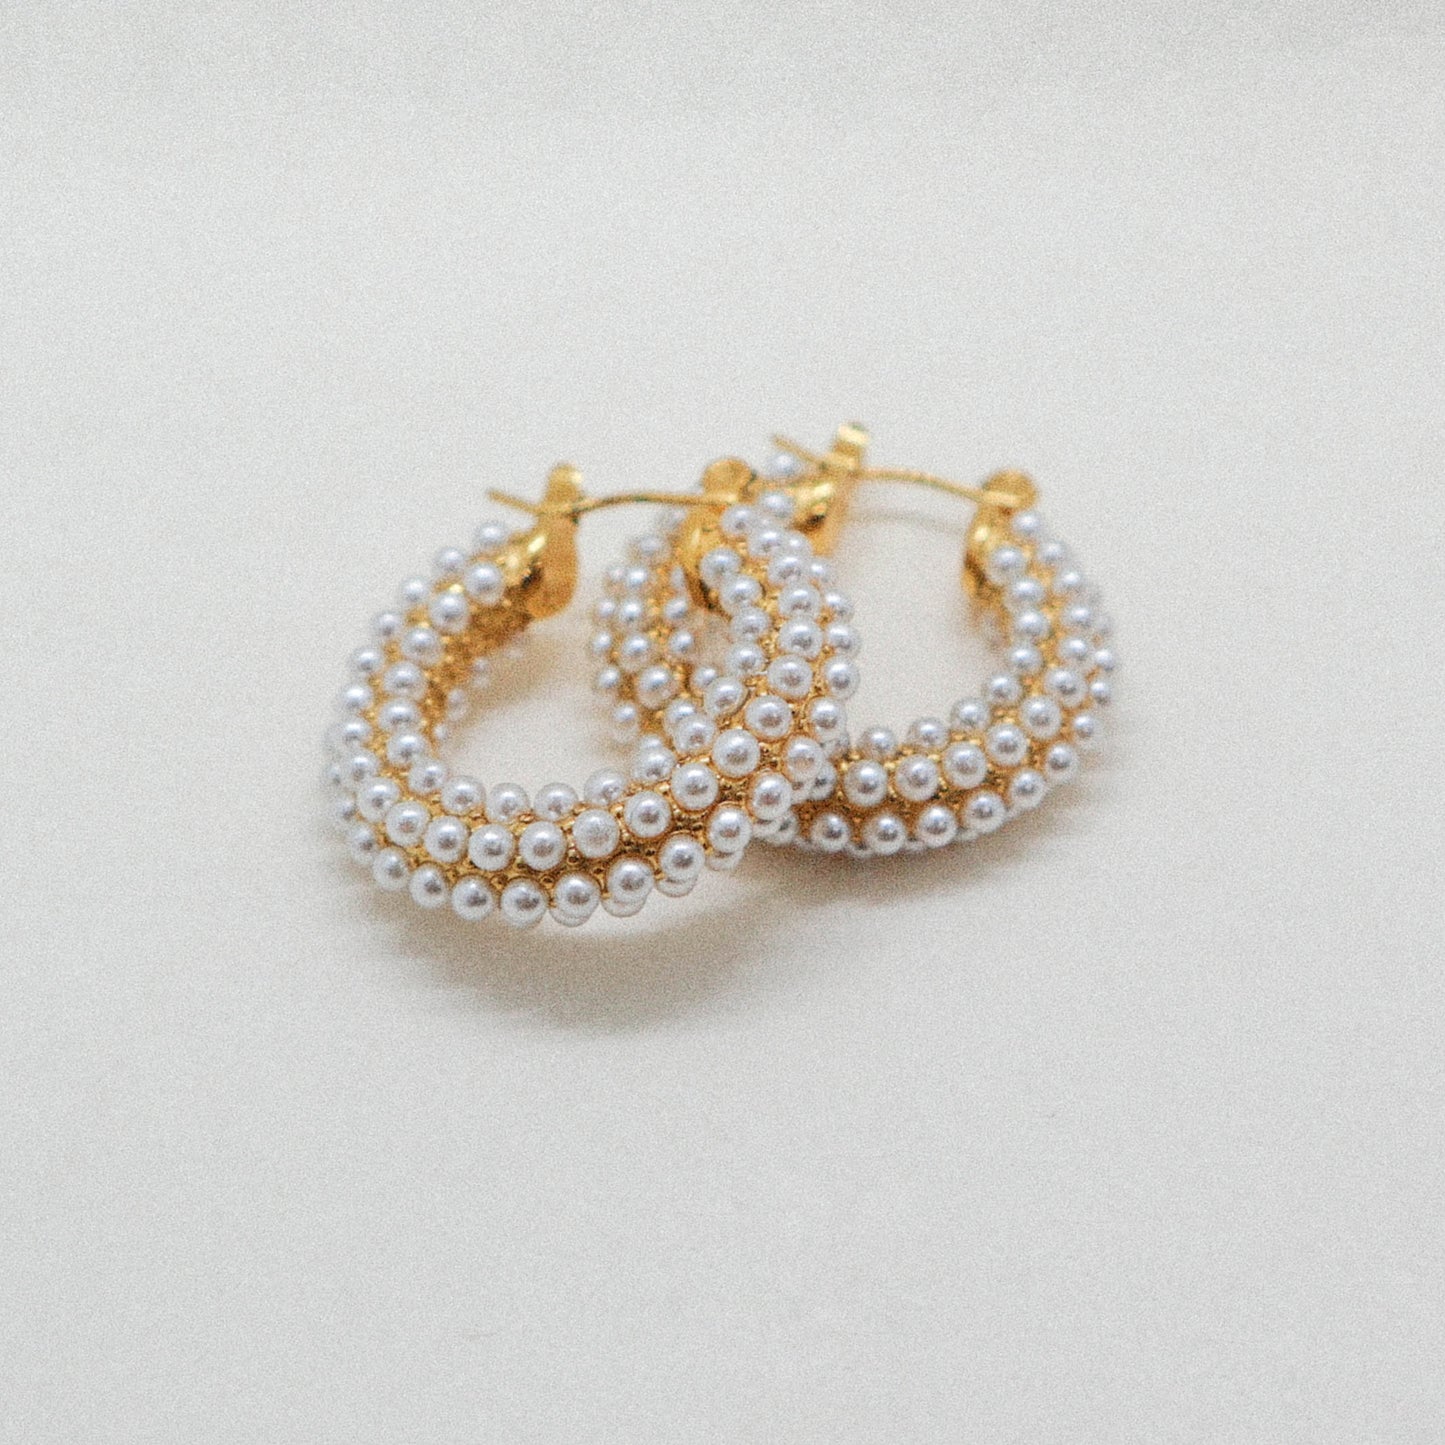 The pearl earrings